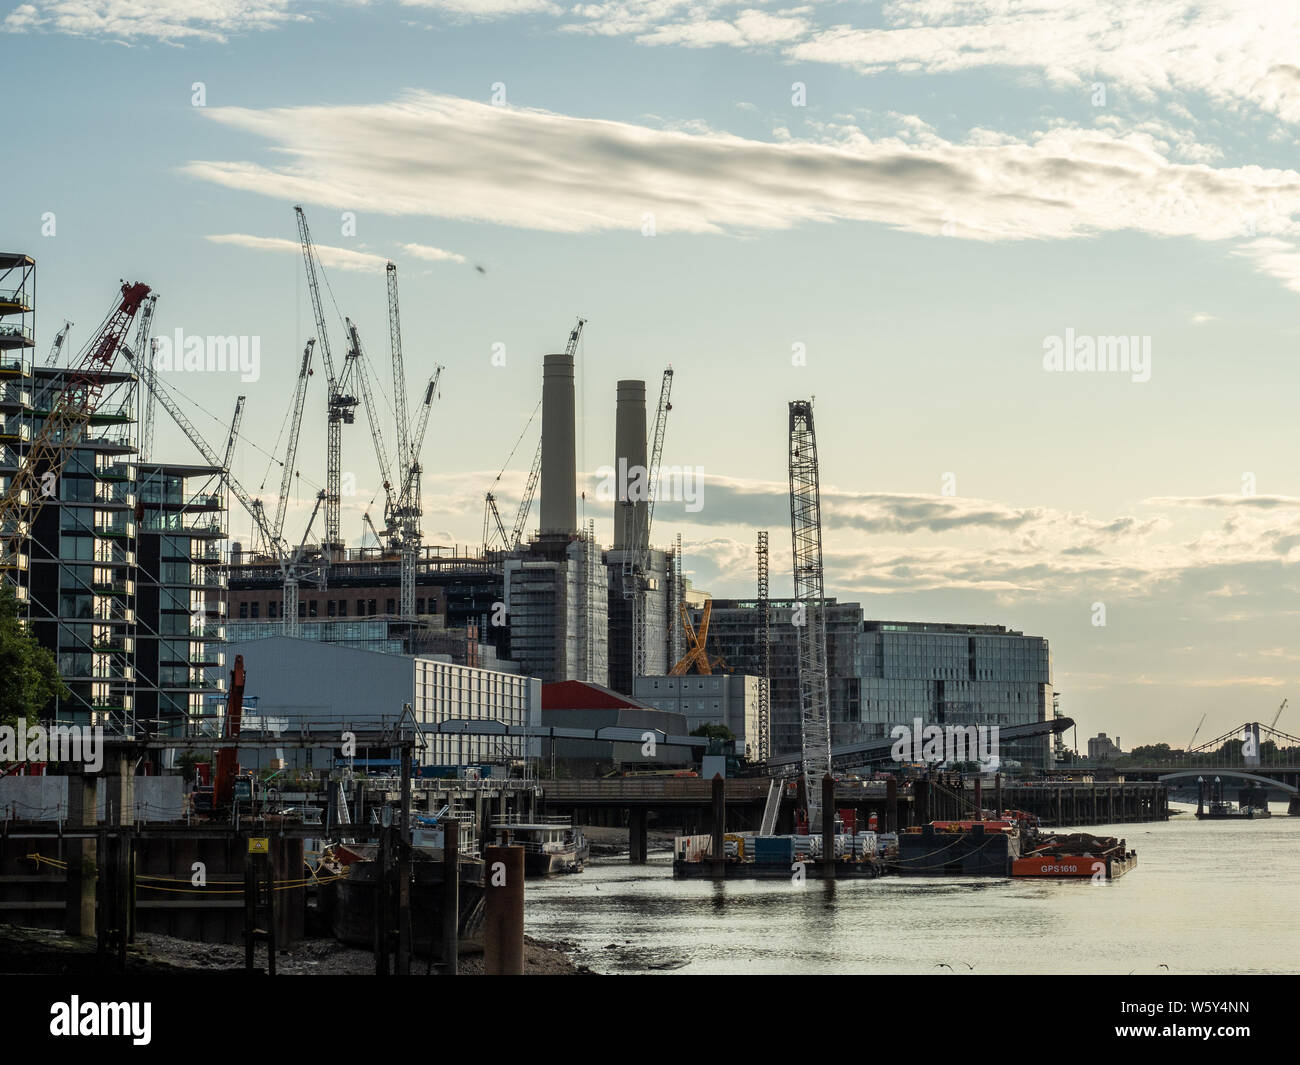 La central eléctrica Battersea retirada del servicio en la orilla sur del río Támesis, Battersea, Londres. Foto de stock